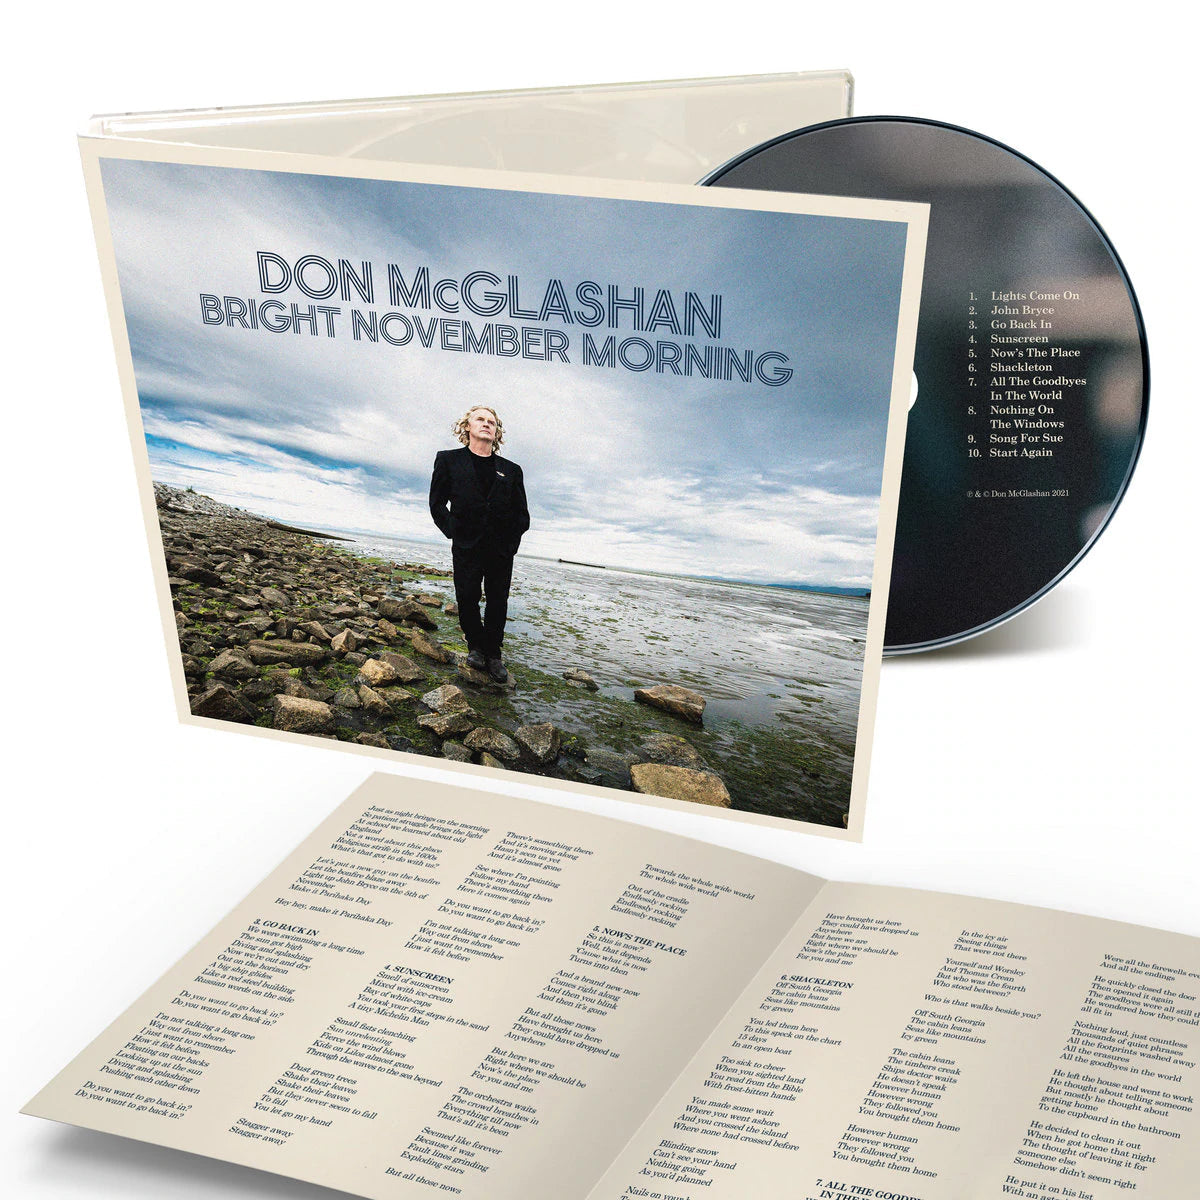 Don McGlashan - Bright November Morning-Mood-Mood